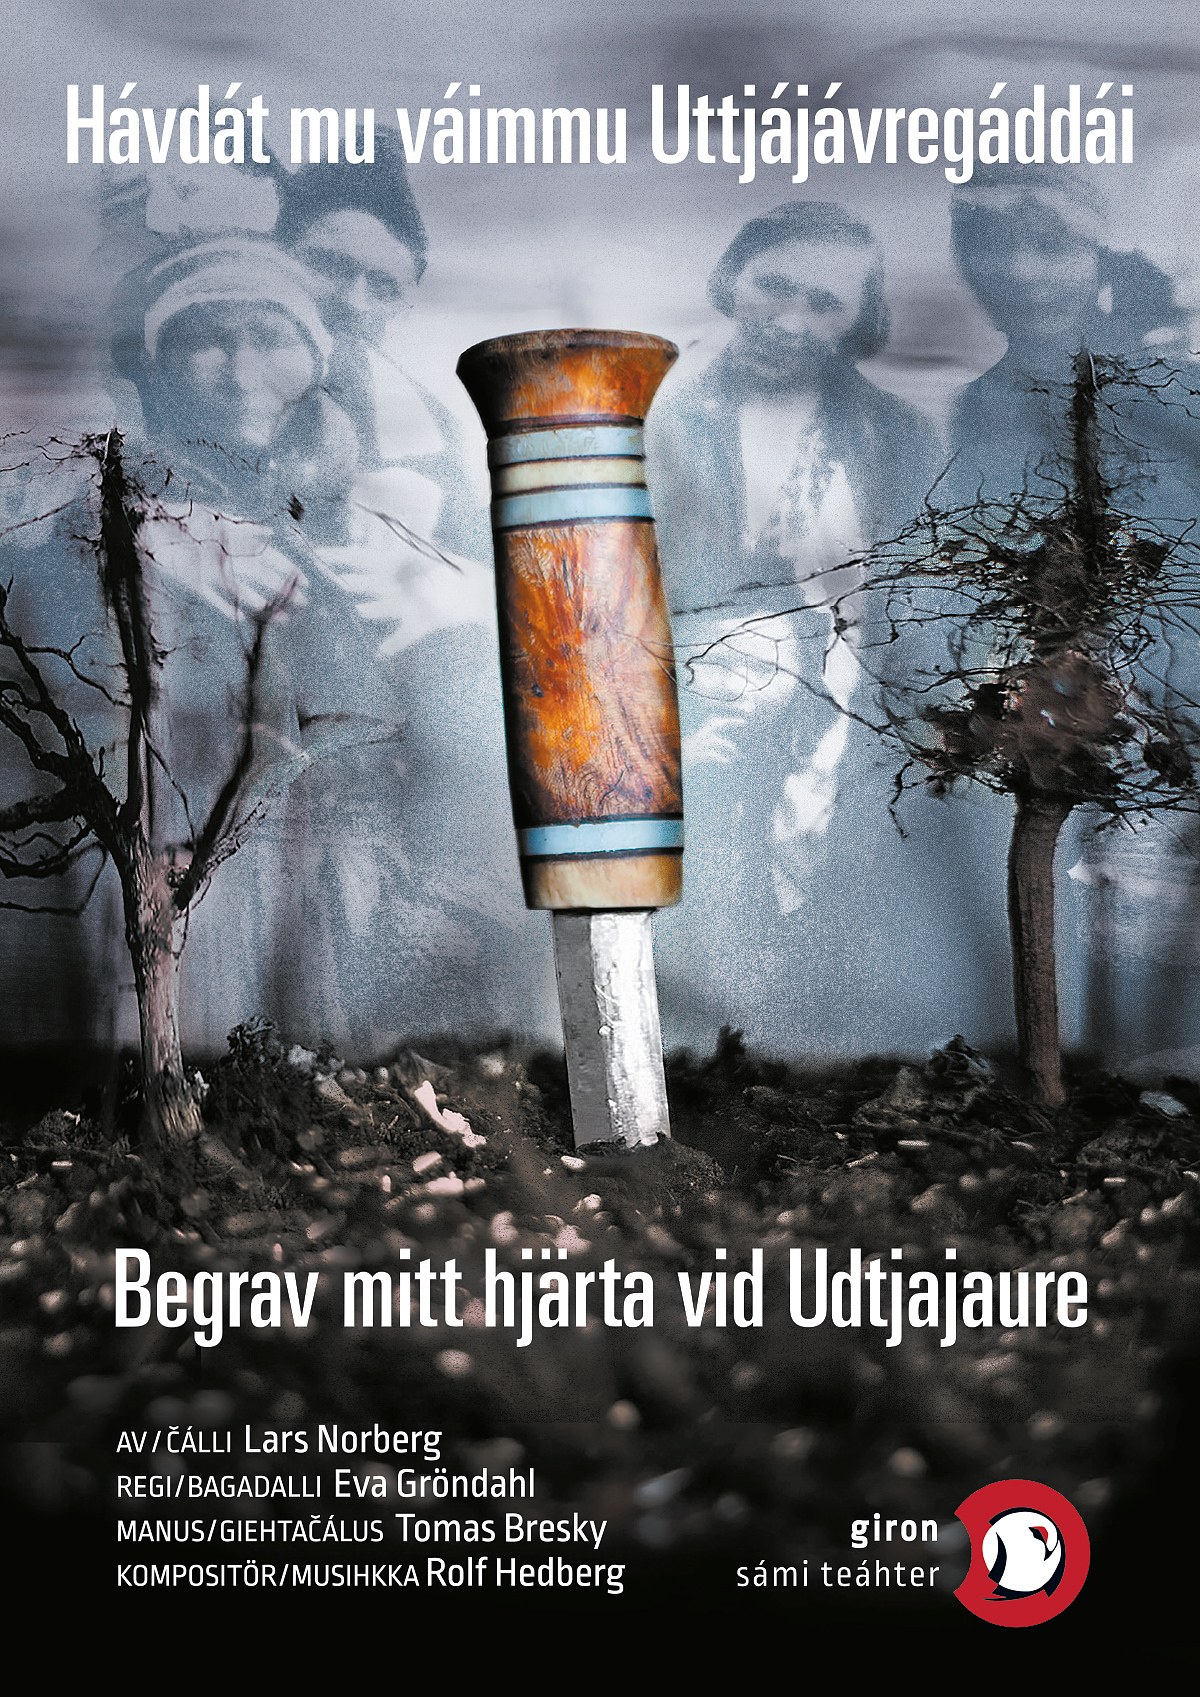 Affisch för Begrav mitt hjärta vis Udtjajaure på Sameteatern i Kiruna på Kiruna Folkets Hus